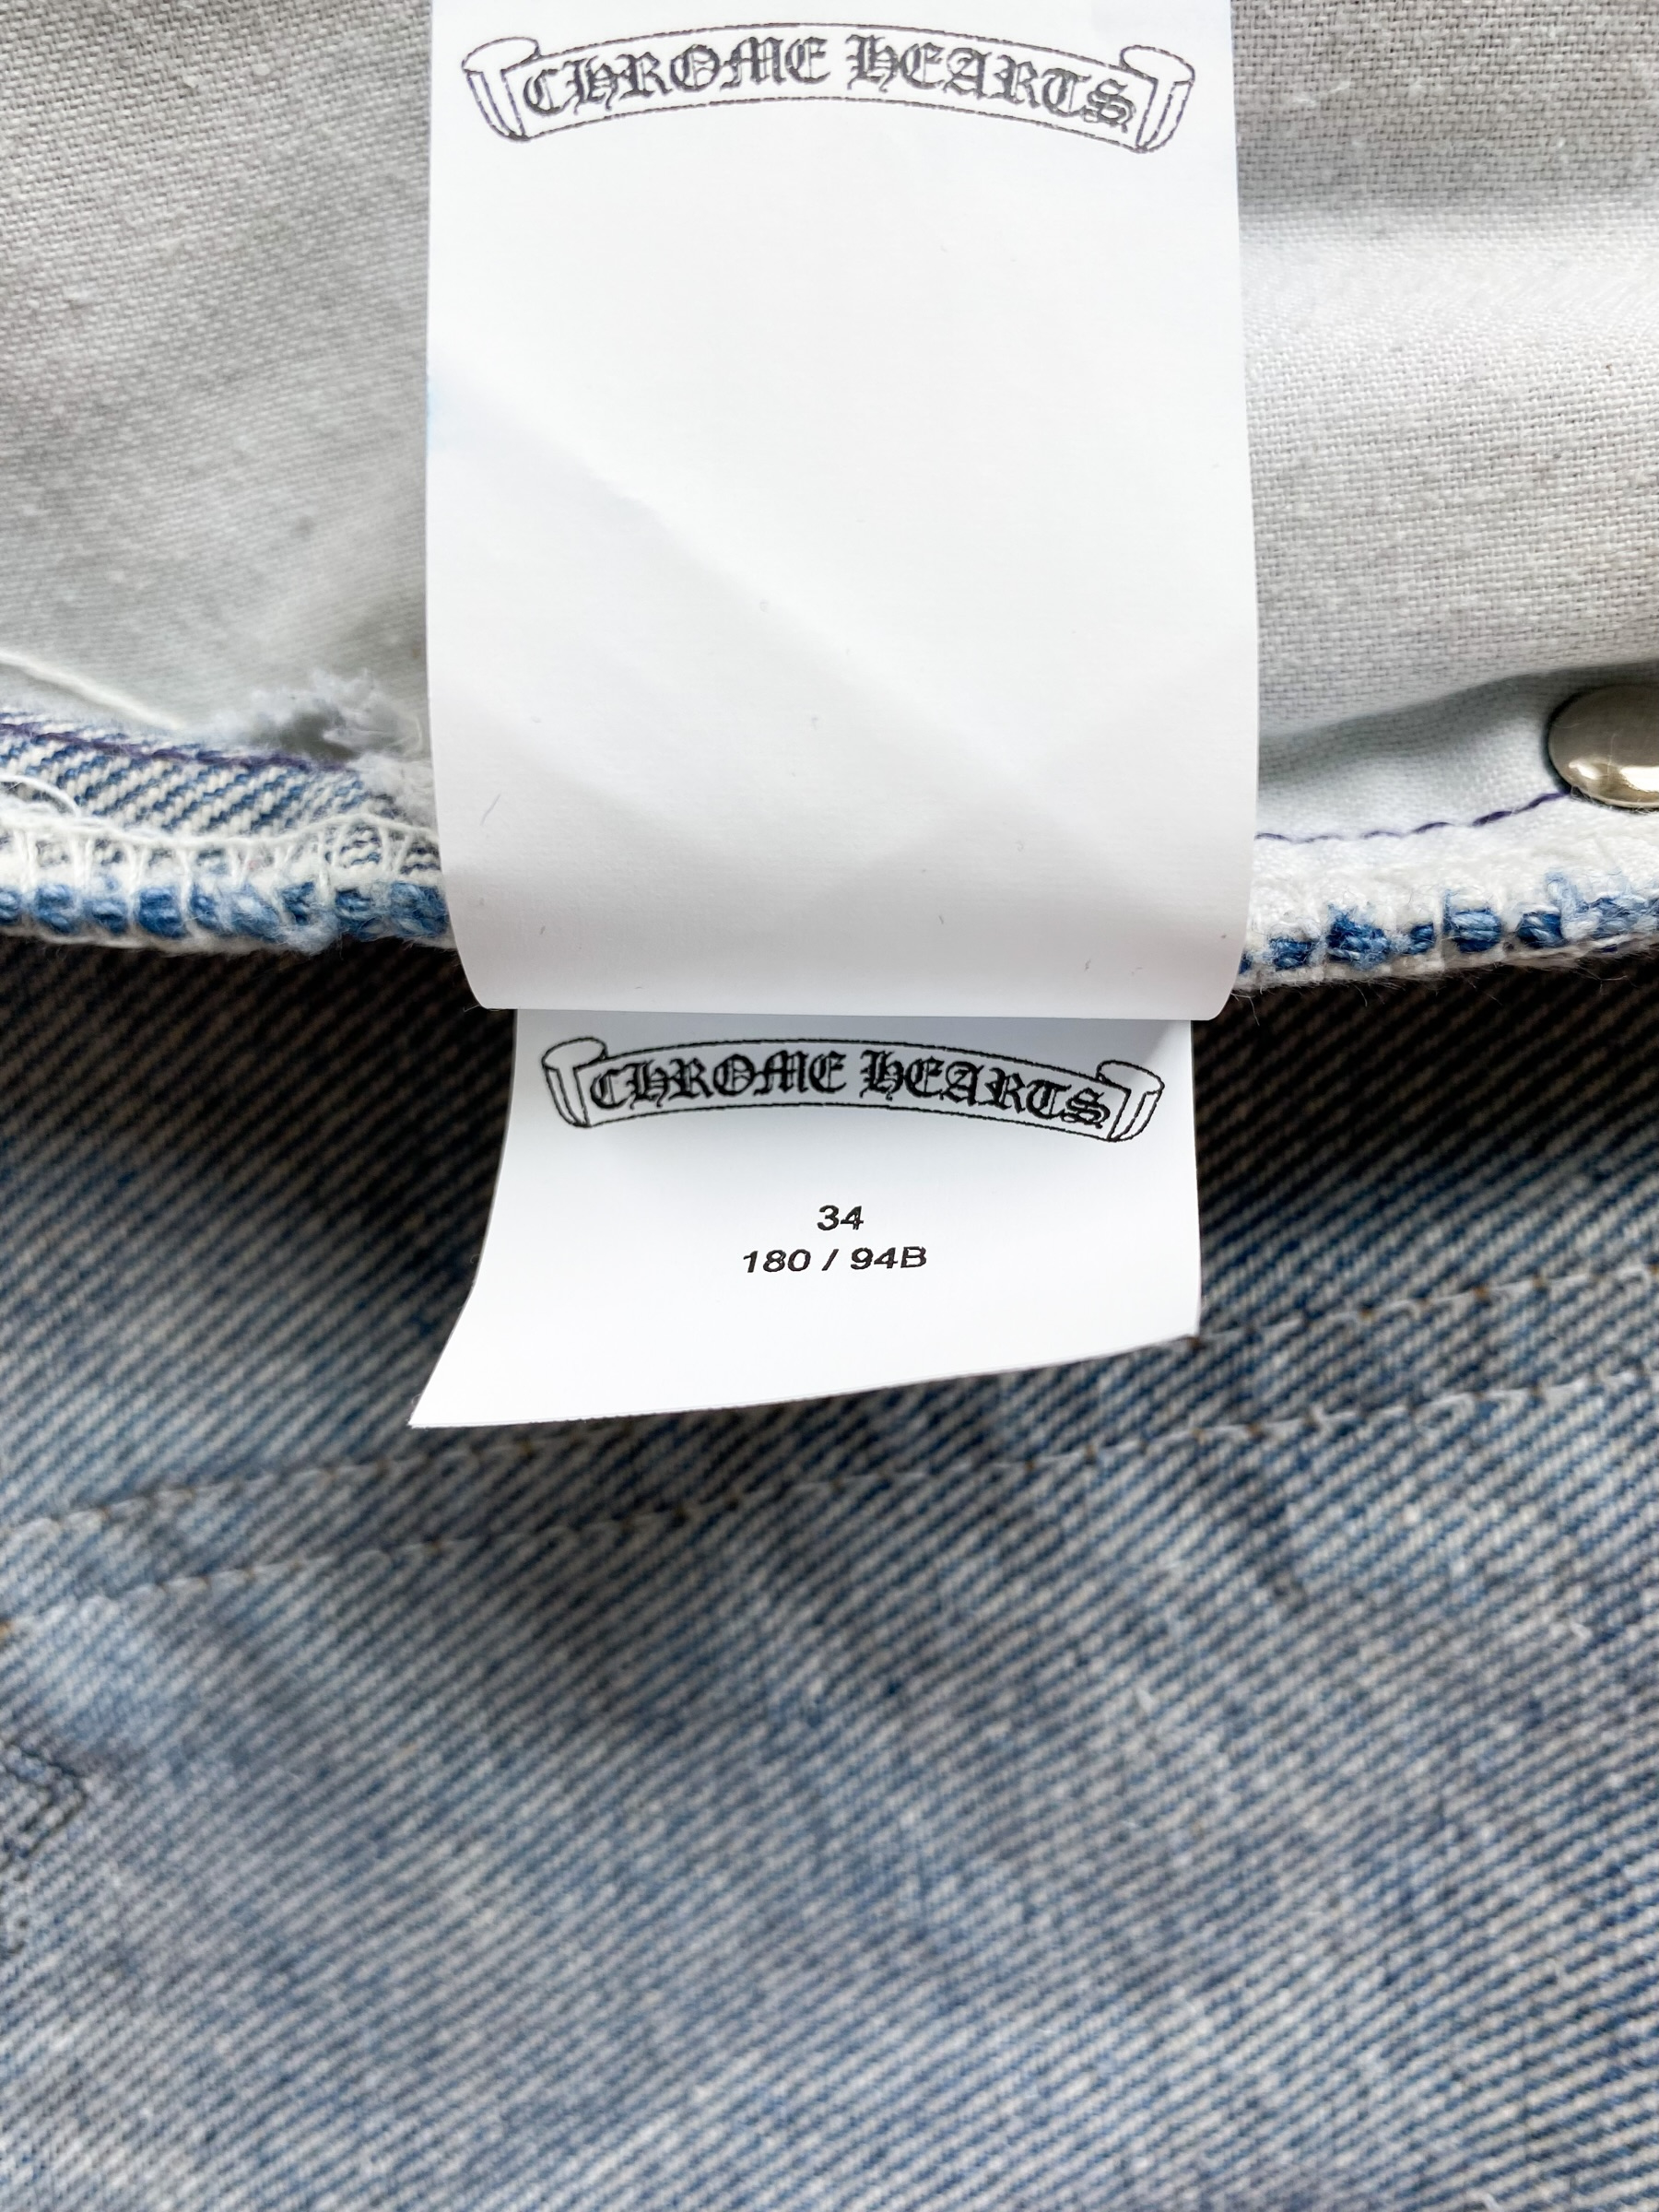 closet check] CHROME HEARTS levis jeans 